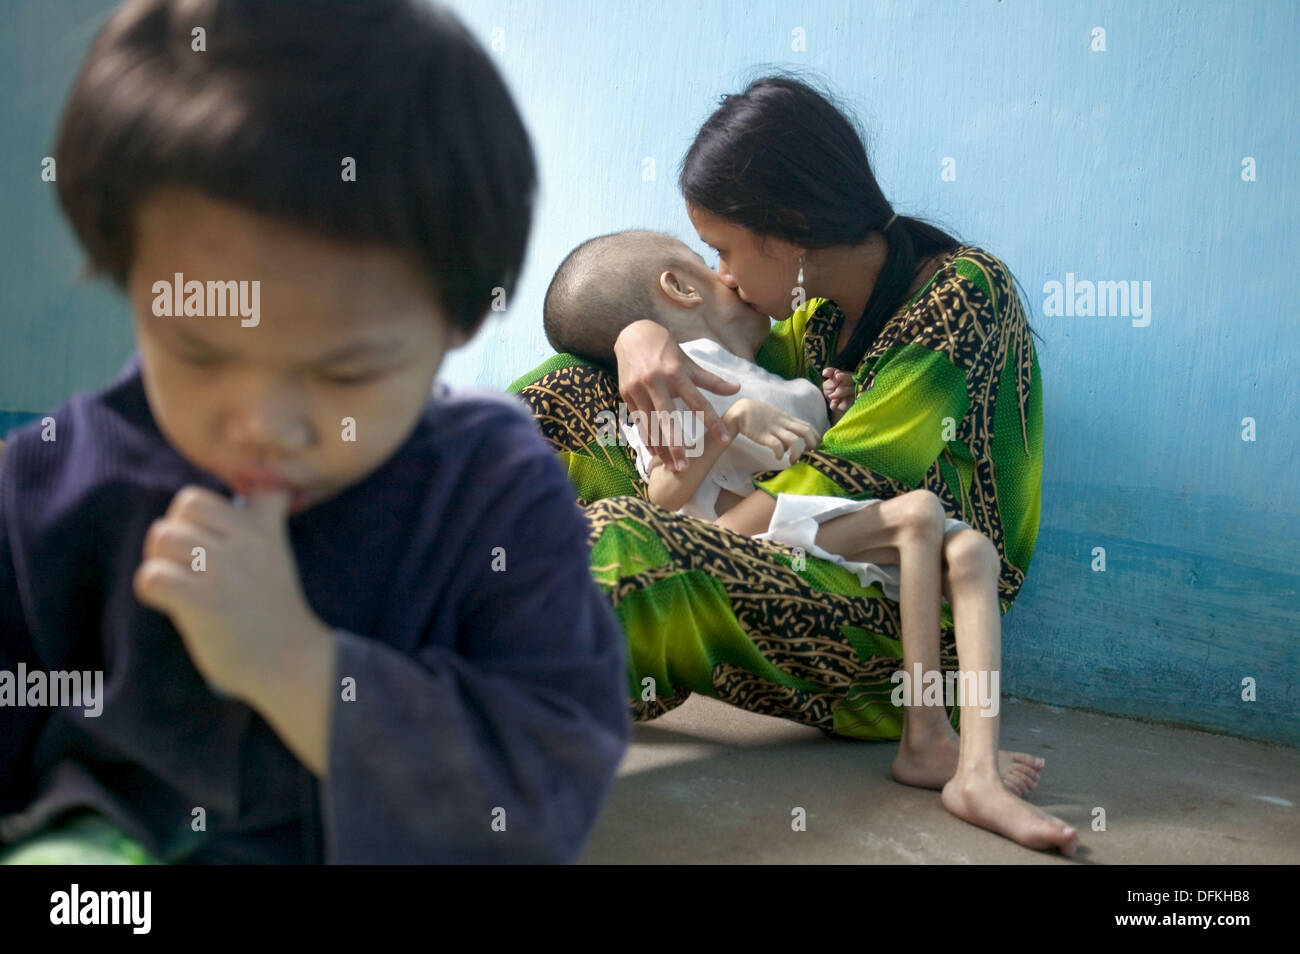 Les enfants de l'exposition à l'severily déformé de la nourriture et de l'eau contaminés par l'agent chimique toxique Orange, Ben Arbre. Vietnam Banque D'Images